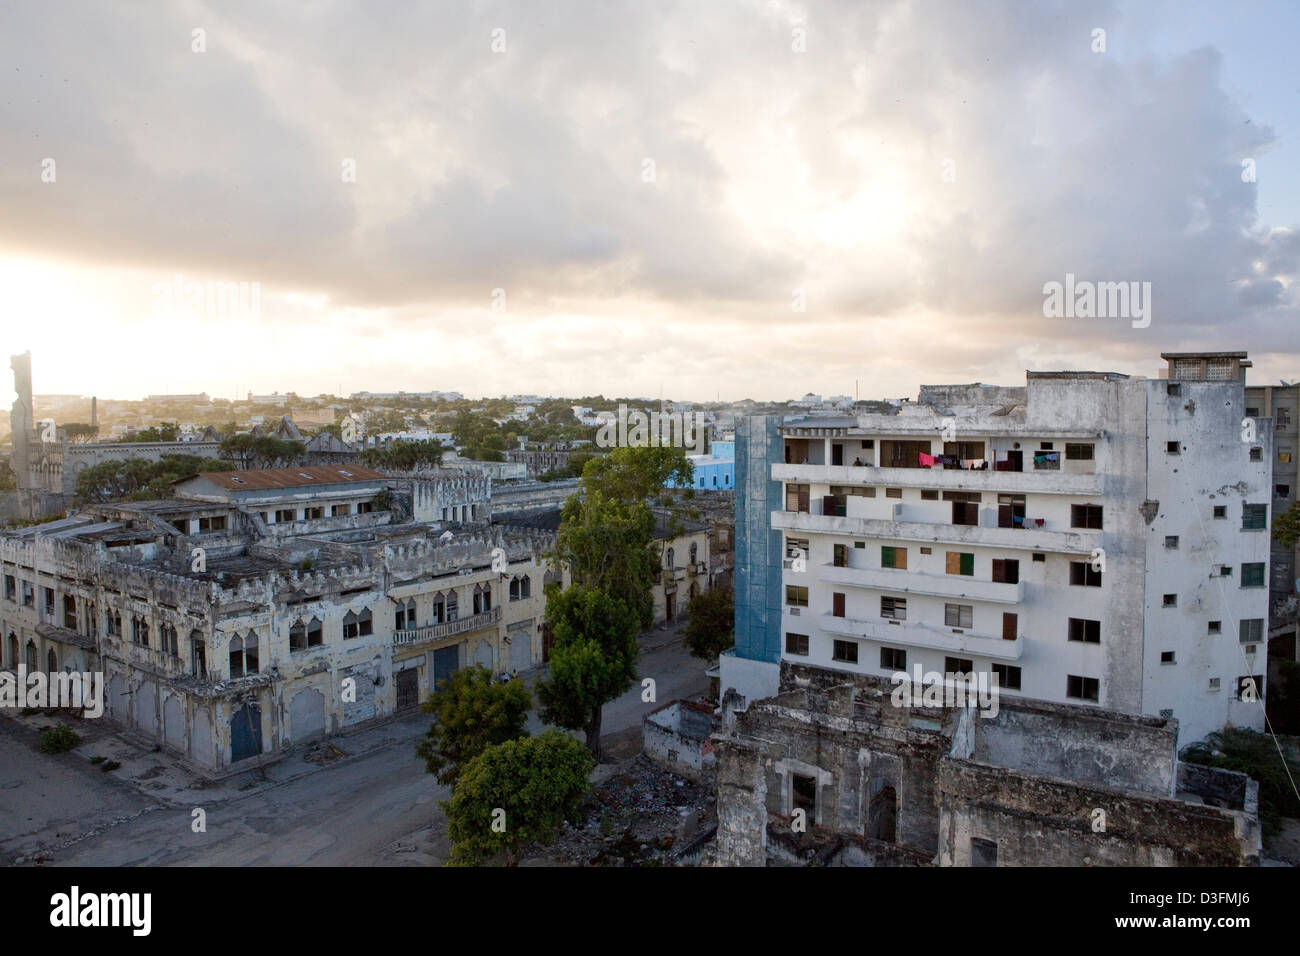 Einem hohen Aussichtspunkt aus einem Gebäude auf der Uruba AMISOM Militärbasis mit Blick auf die Innenstadt von Mogadischu, Somalia. Stockfoto